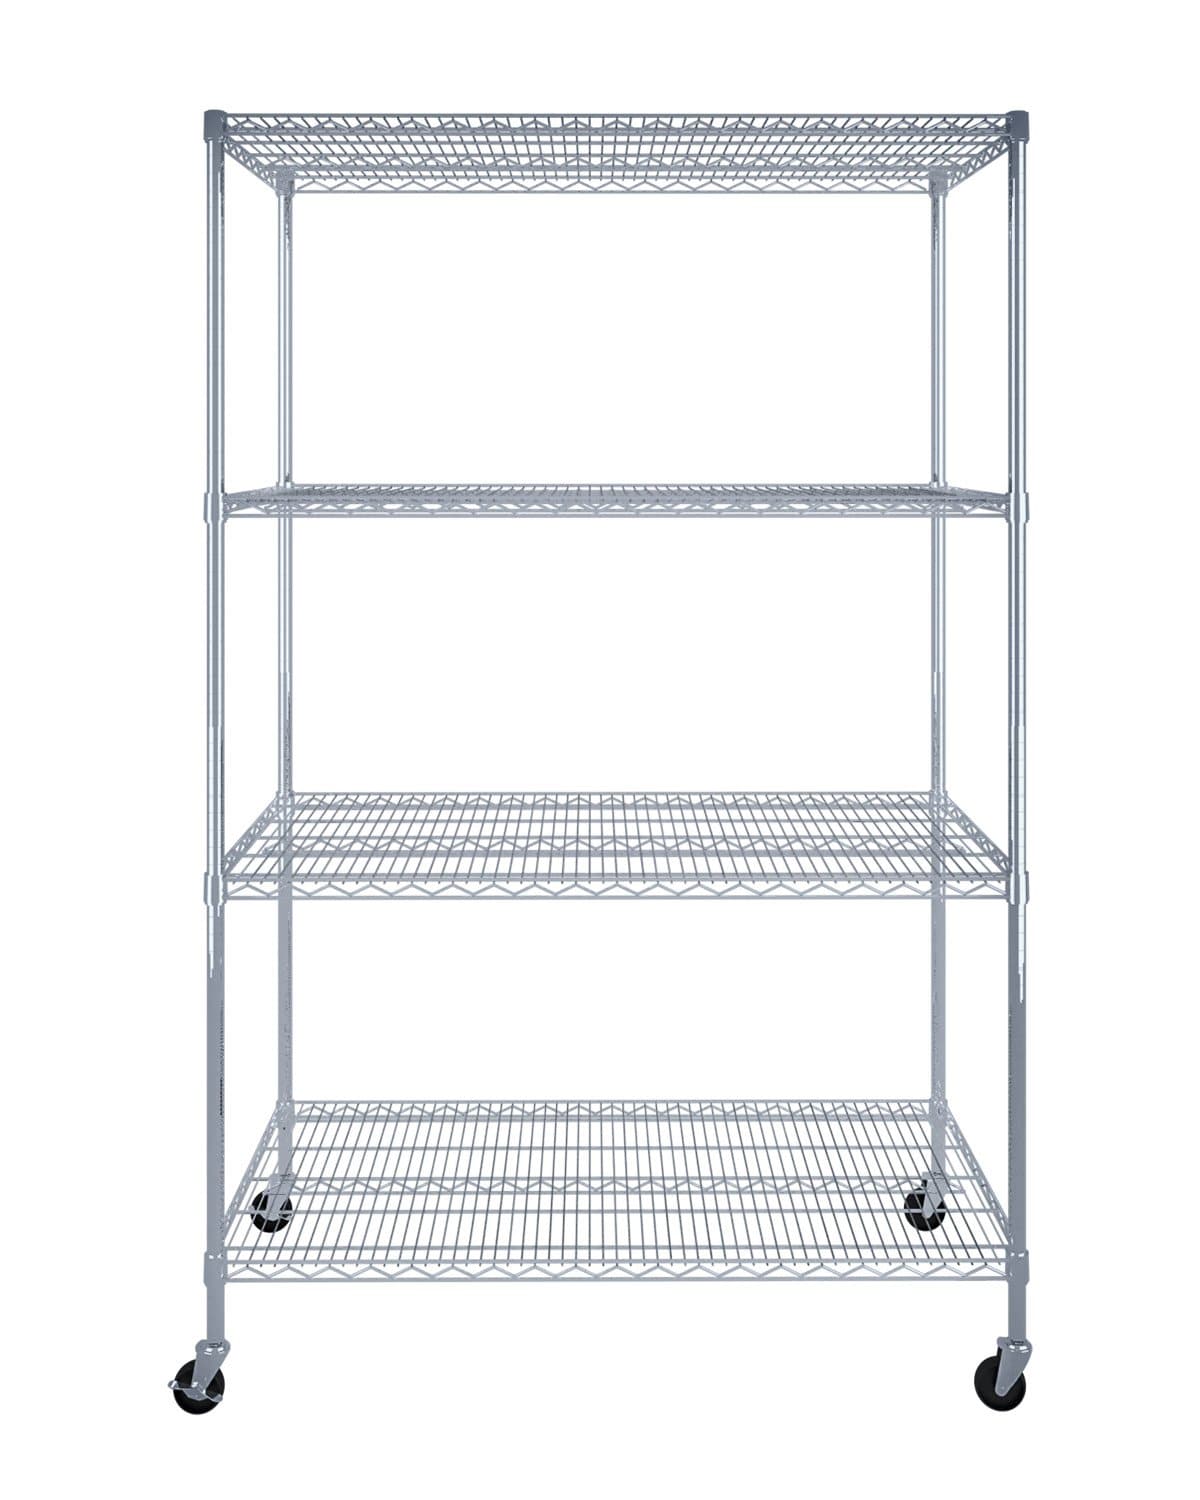 SafeRacks 4-Tier Wire Shelving Storage Racks on Wheels - 24” x 48” x 72” - Senior.com Storage Racks with Wheels